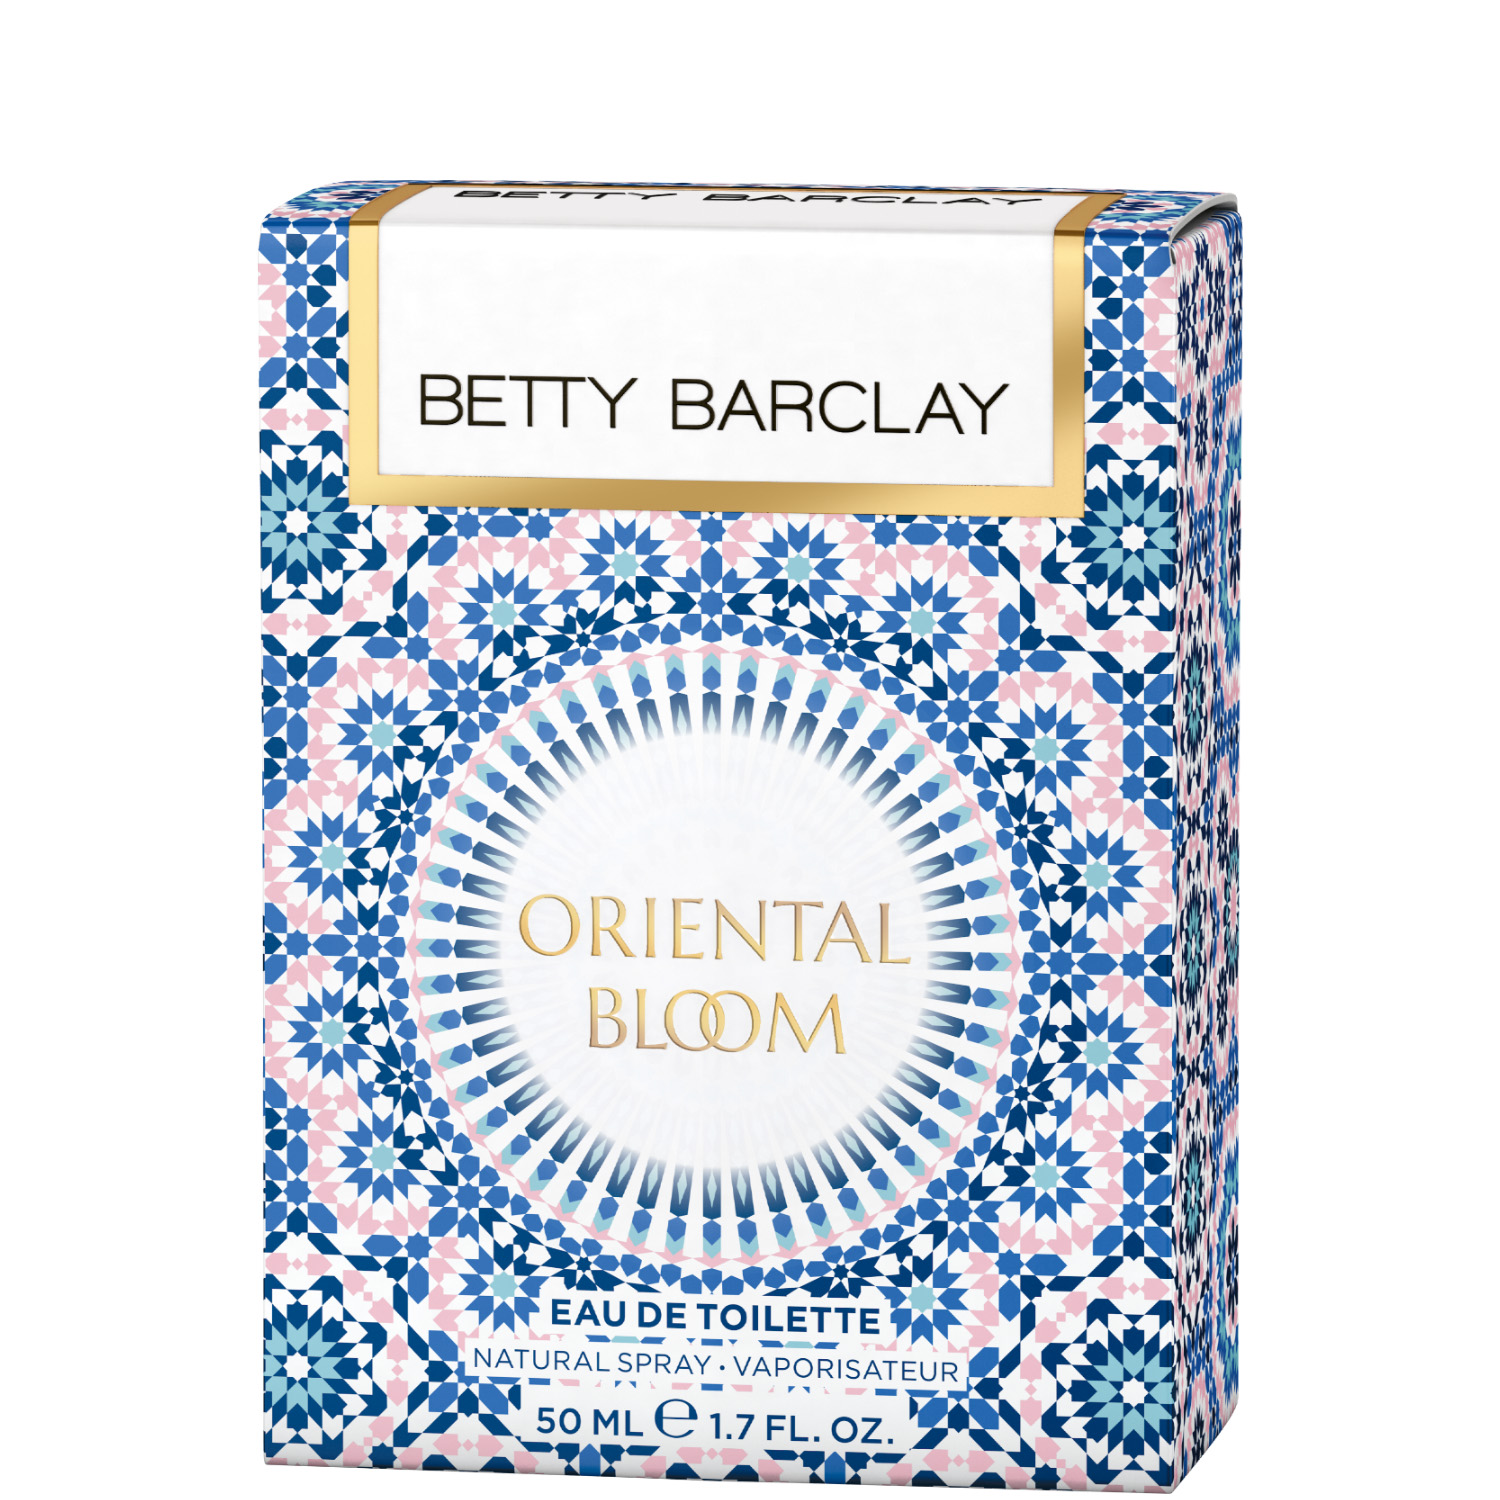 Betty Barclay Oriental Bloom Eau de Toilette 50ml